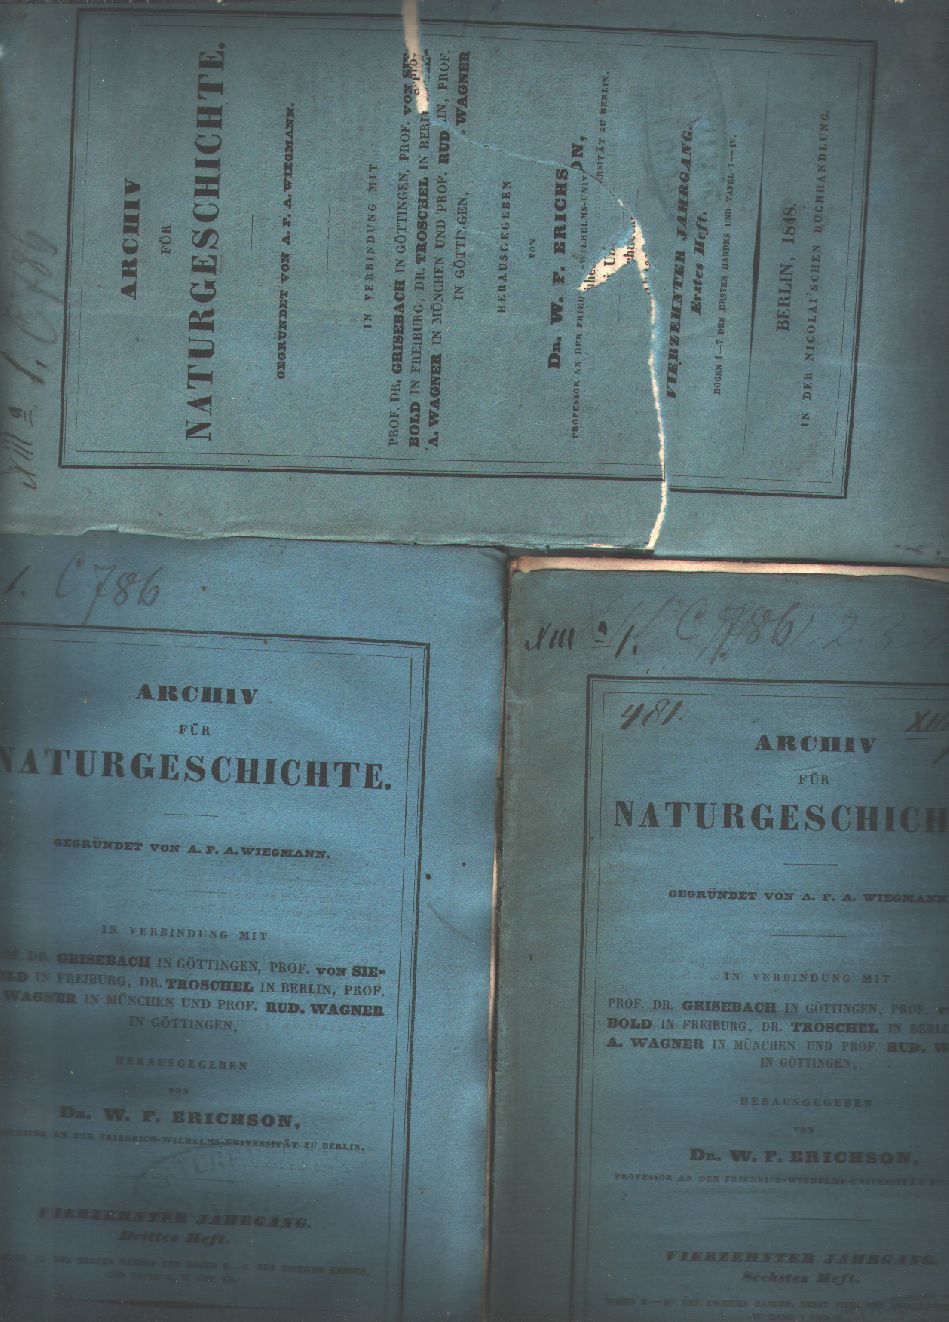 Dr. Erichson Hrsg.  Archiv für naturgeschichte 14. Jg. 1.,2. und 6.  Heft 